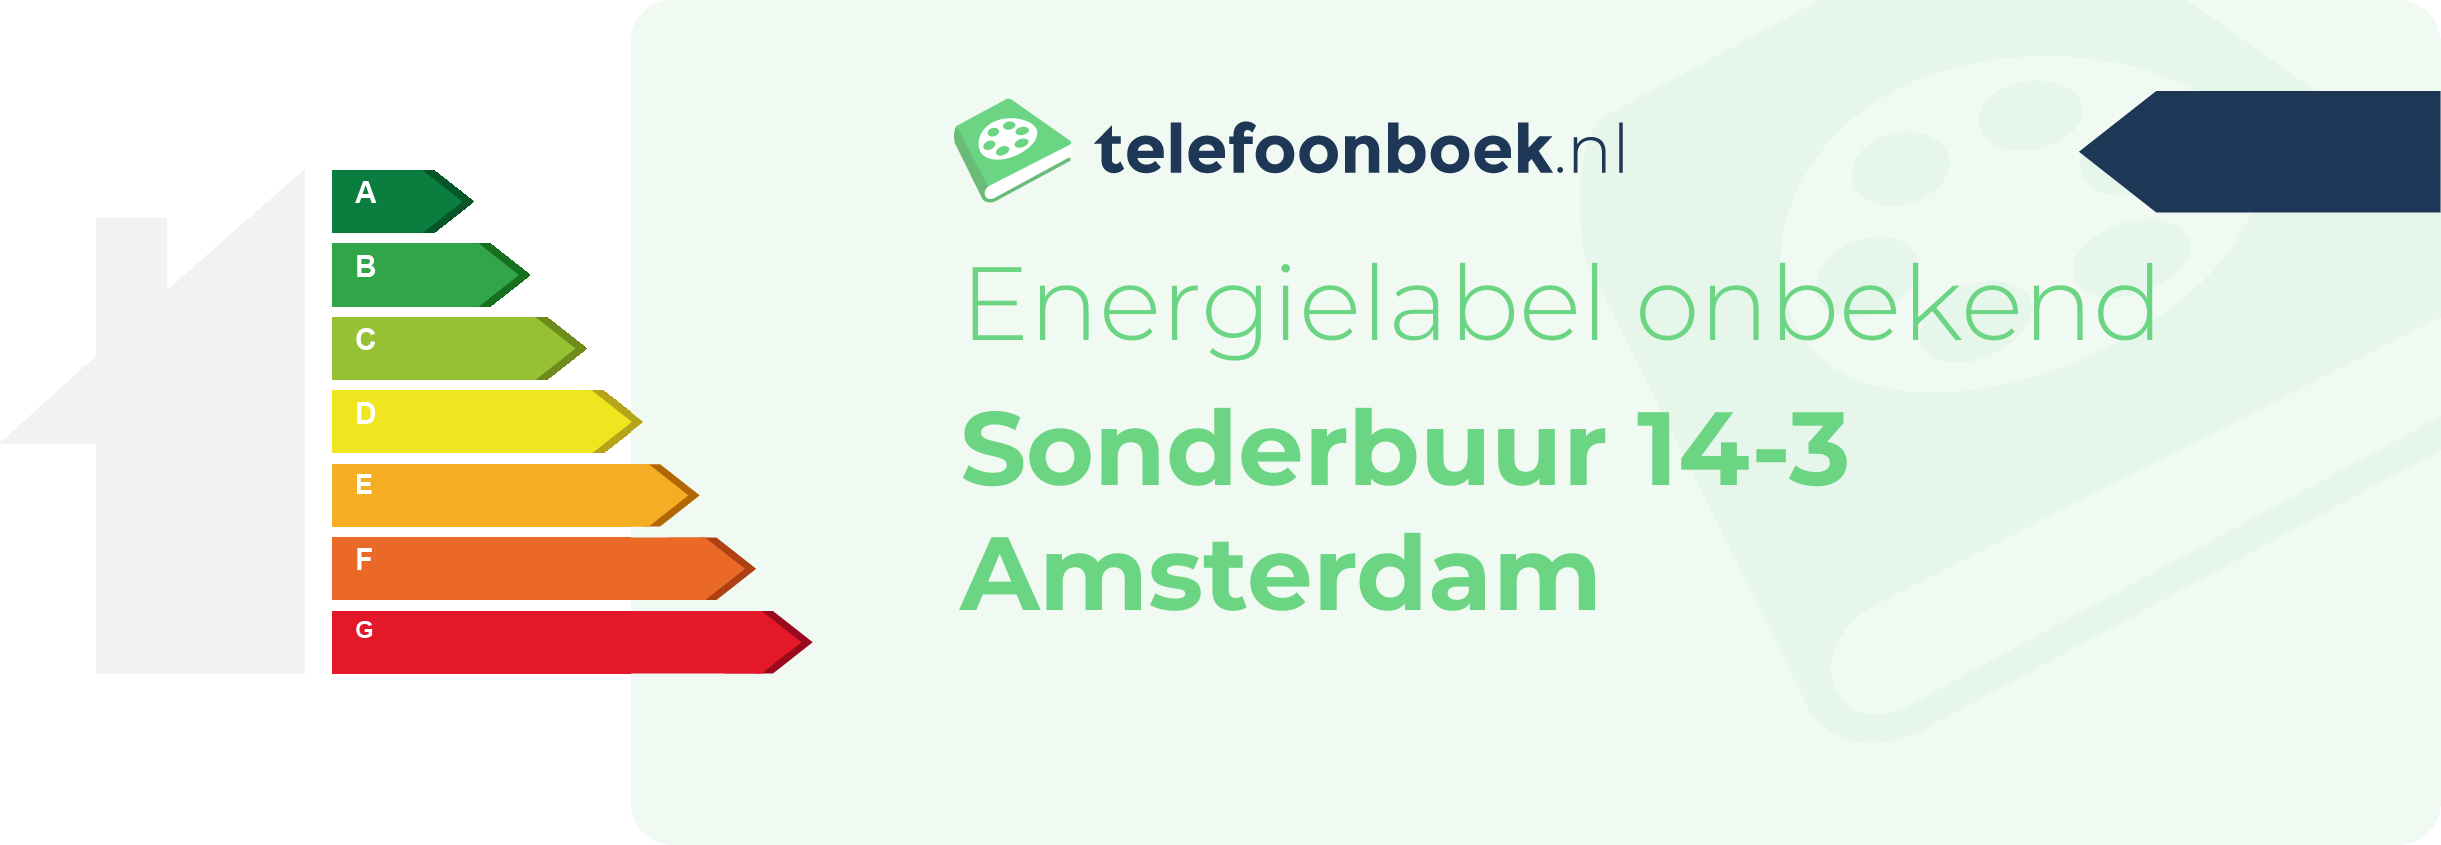 Energielabel Sonderbuur 14-3 Amsterdam